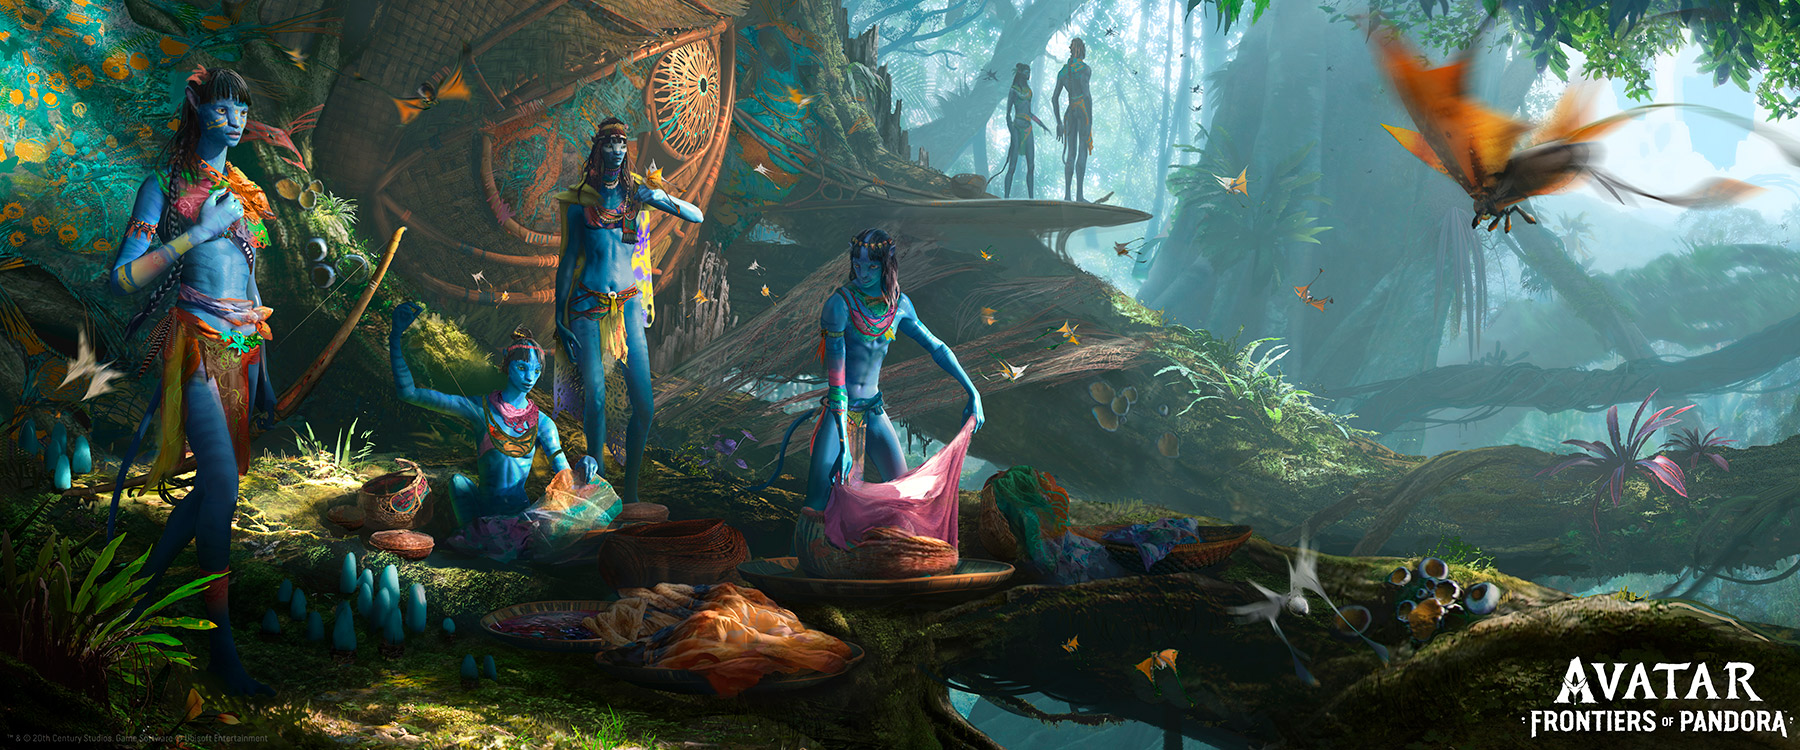 Avatar: Frontiers on Pandora